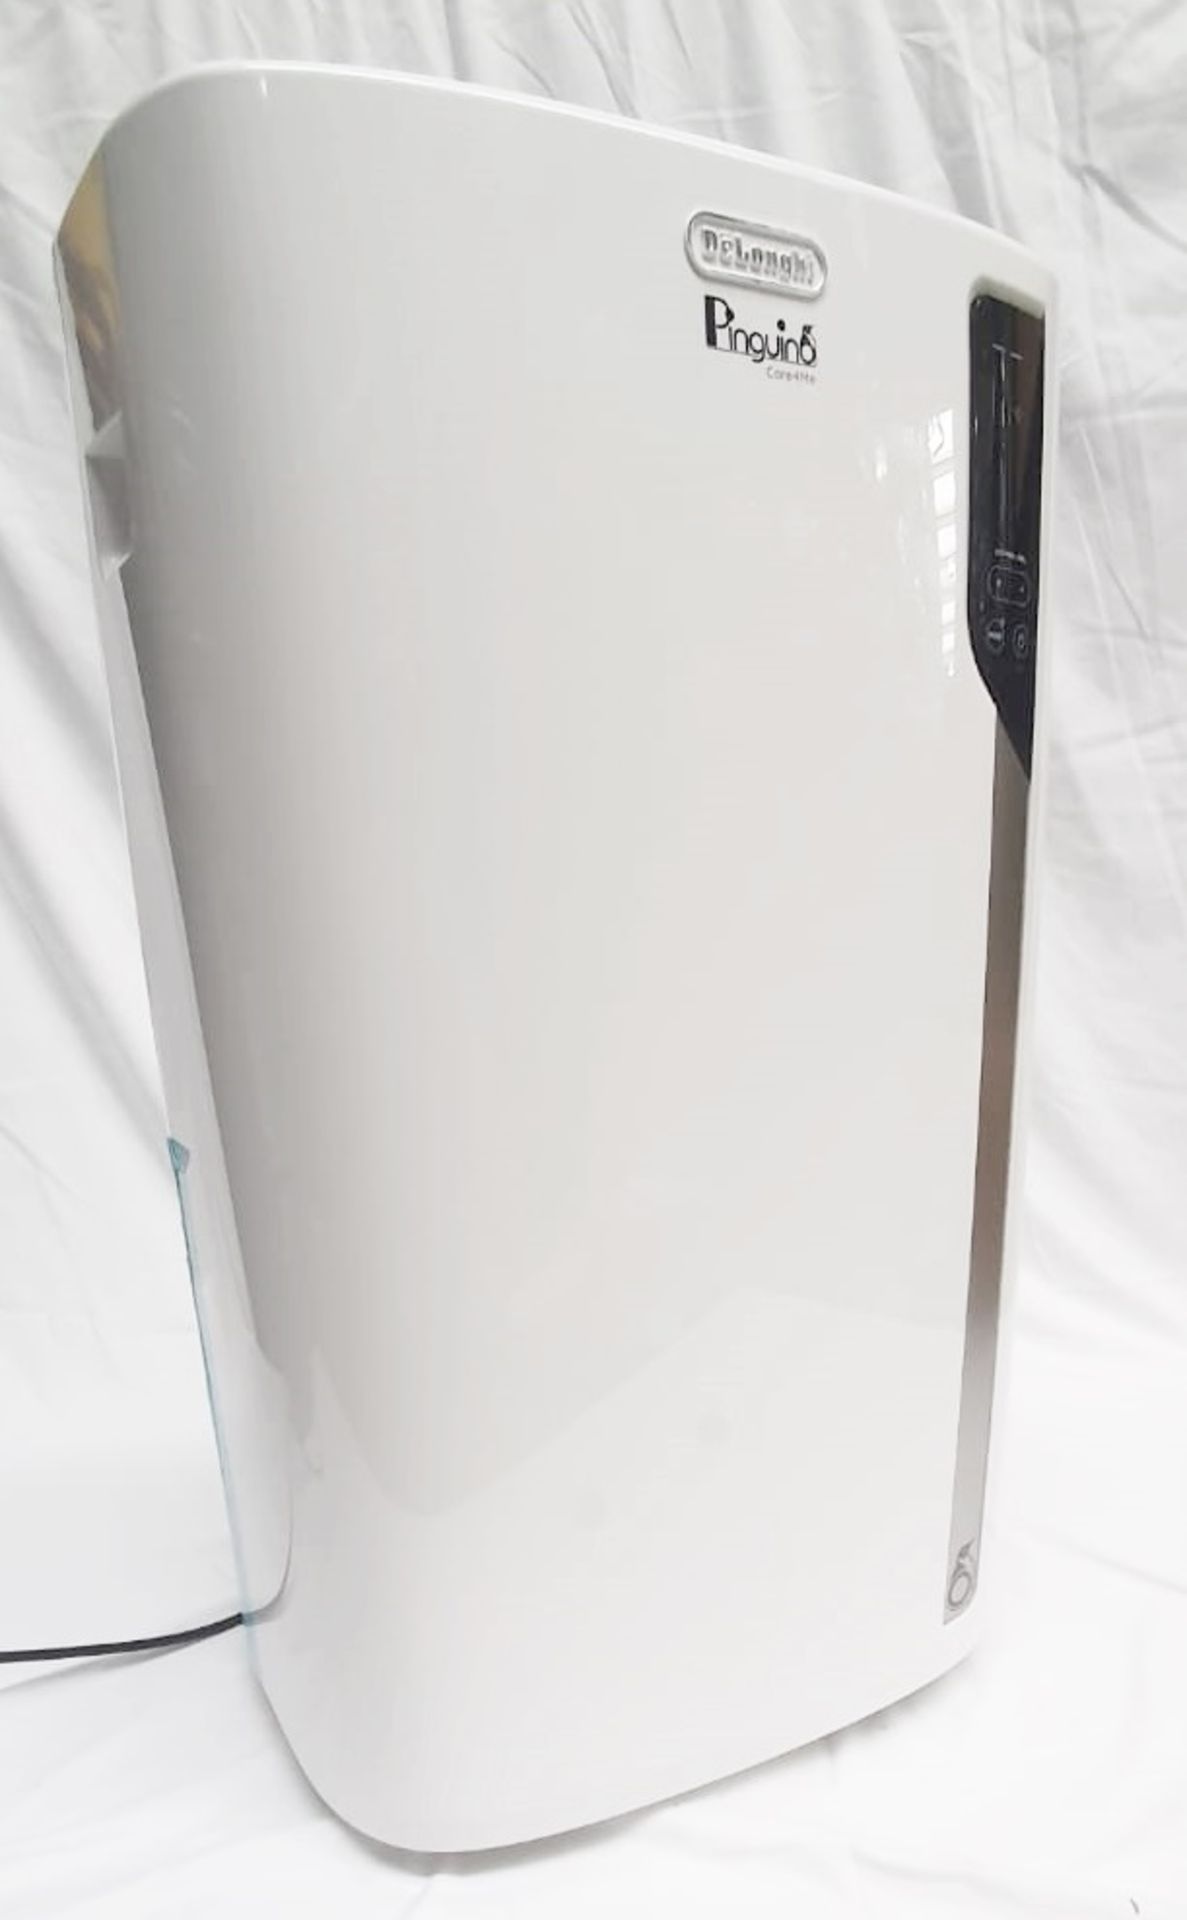 1 x DELONGHI 'Pinguino' PAC EX130 CST Smart Air Conditioner 13000 Btu - Boxed - Original RRP £999.00 - Image 5 of 12